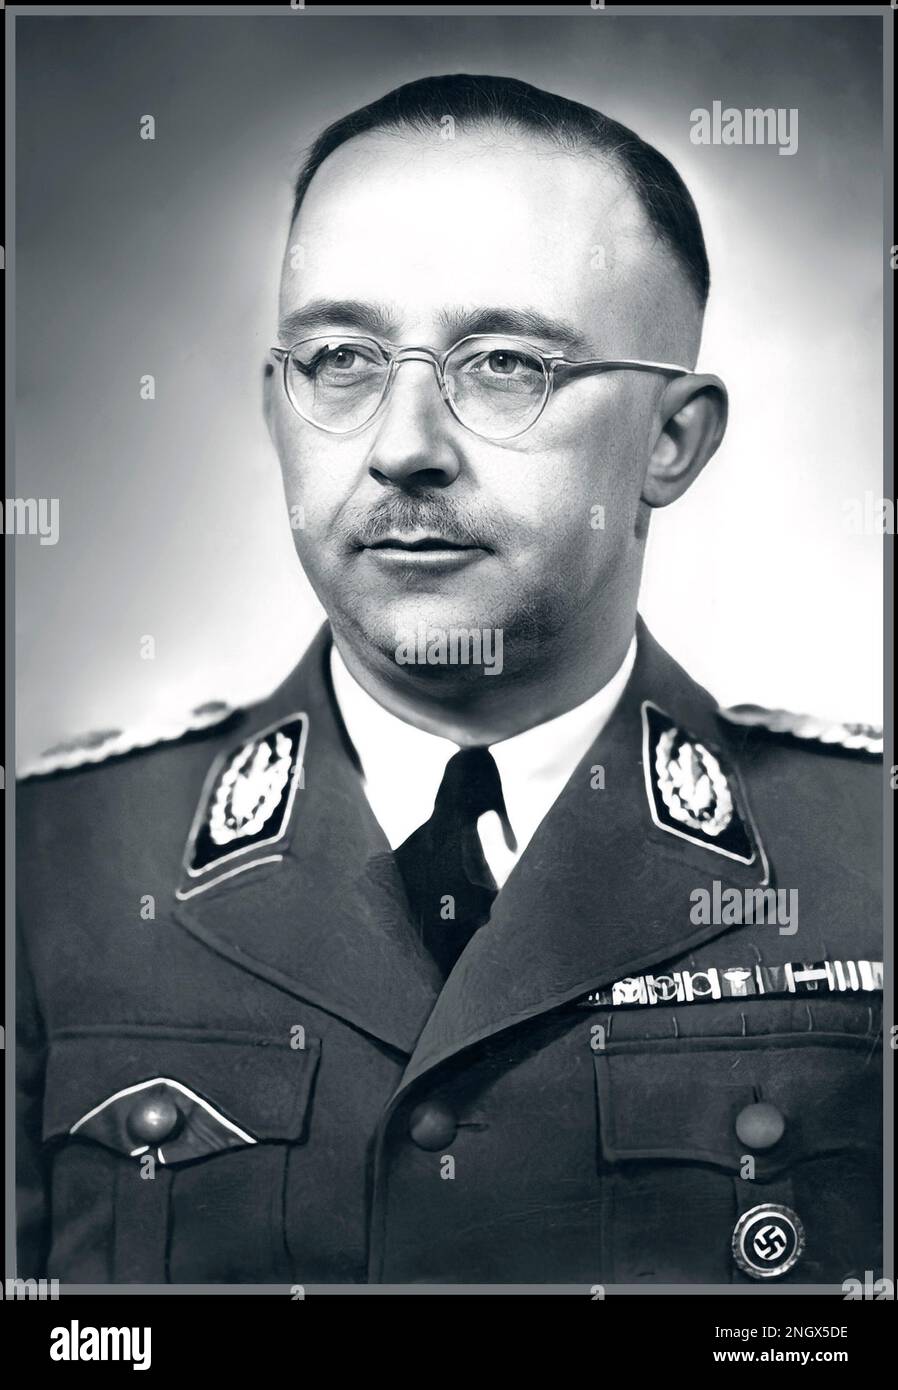 HIMMLER NAZISTA Heinrich Luitpold Himmler WW2 nazista. Era Reichsführer dello Schutzstaffel, e un membro principale del Partito nazista della Germania. Himmler era uno degli uomini più potenti della Germania nazista e il principale architetto dell'Olocausto. Data 1942 si suicidò prima di essere processato per crimini contro l'umanità. Foto Stock